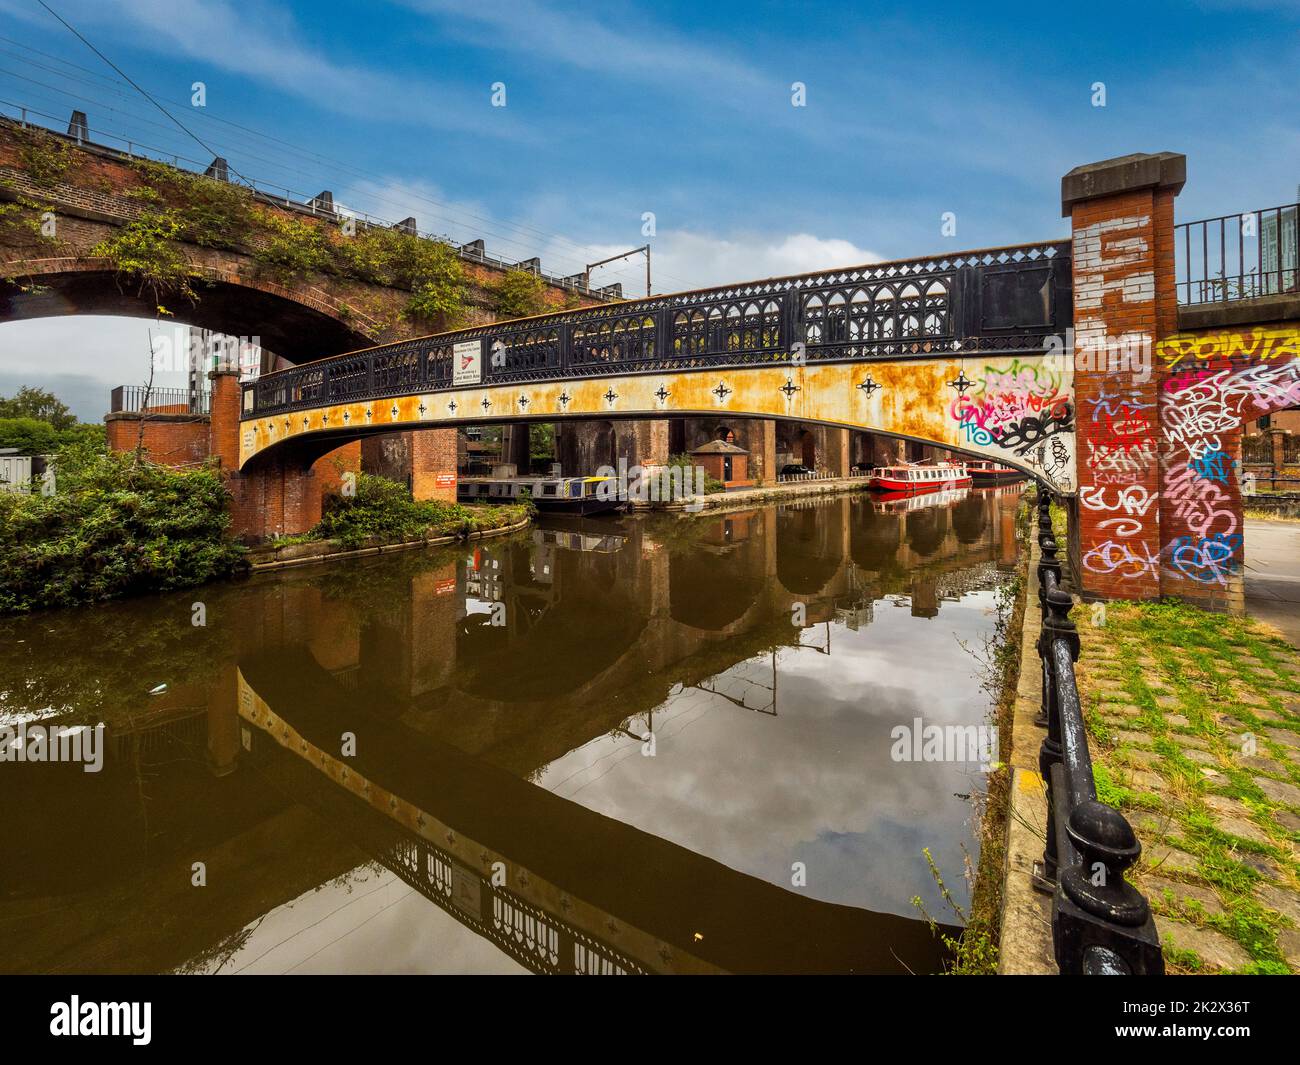 Puente peatonal, con graffitis de colores brillantes que abarca el Canal de Bridgewater, y termina debajo del viaducto de Bridgewater. Manchester. REINO UNIDO. Foto de stock